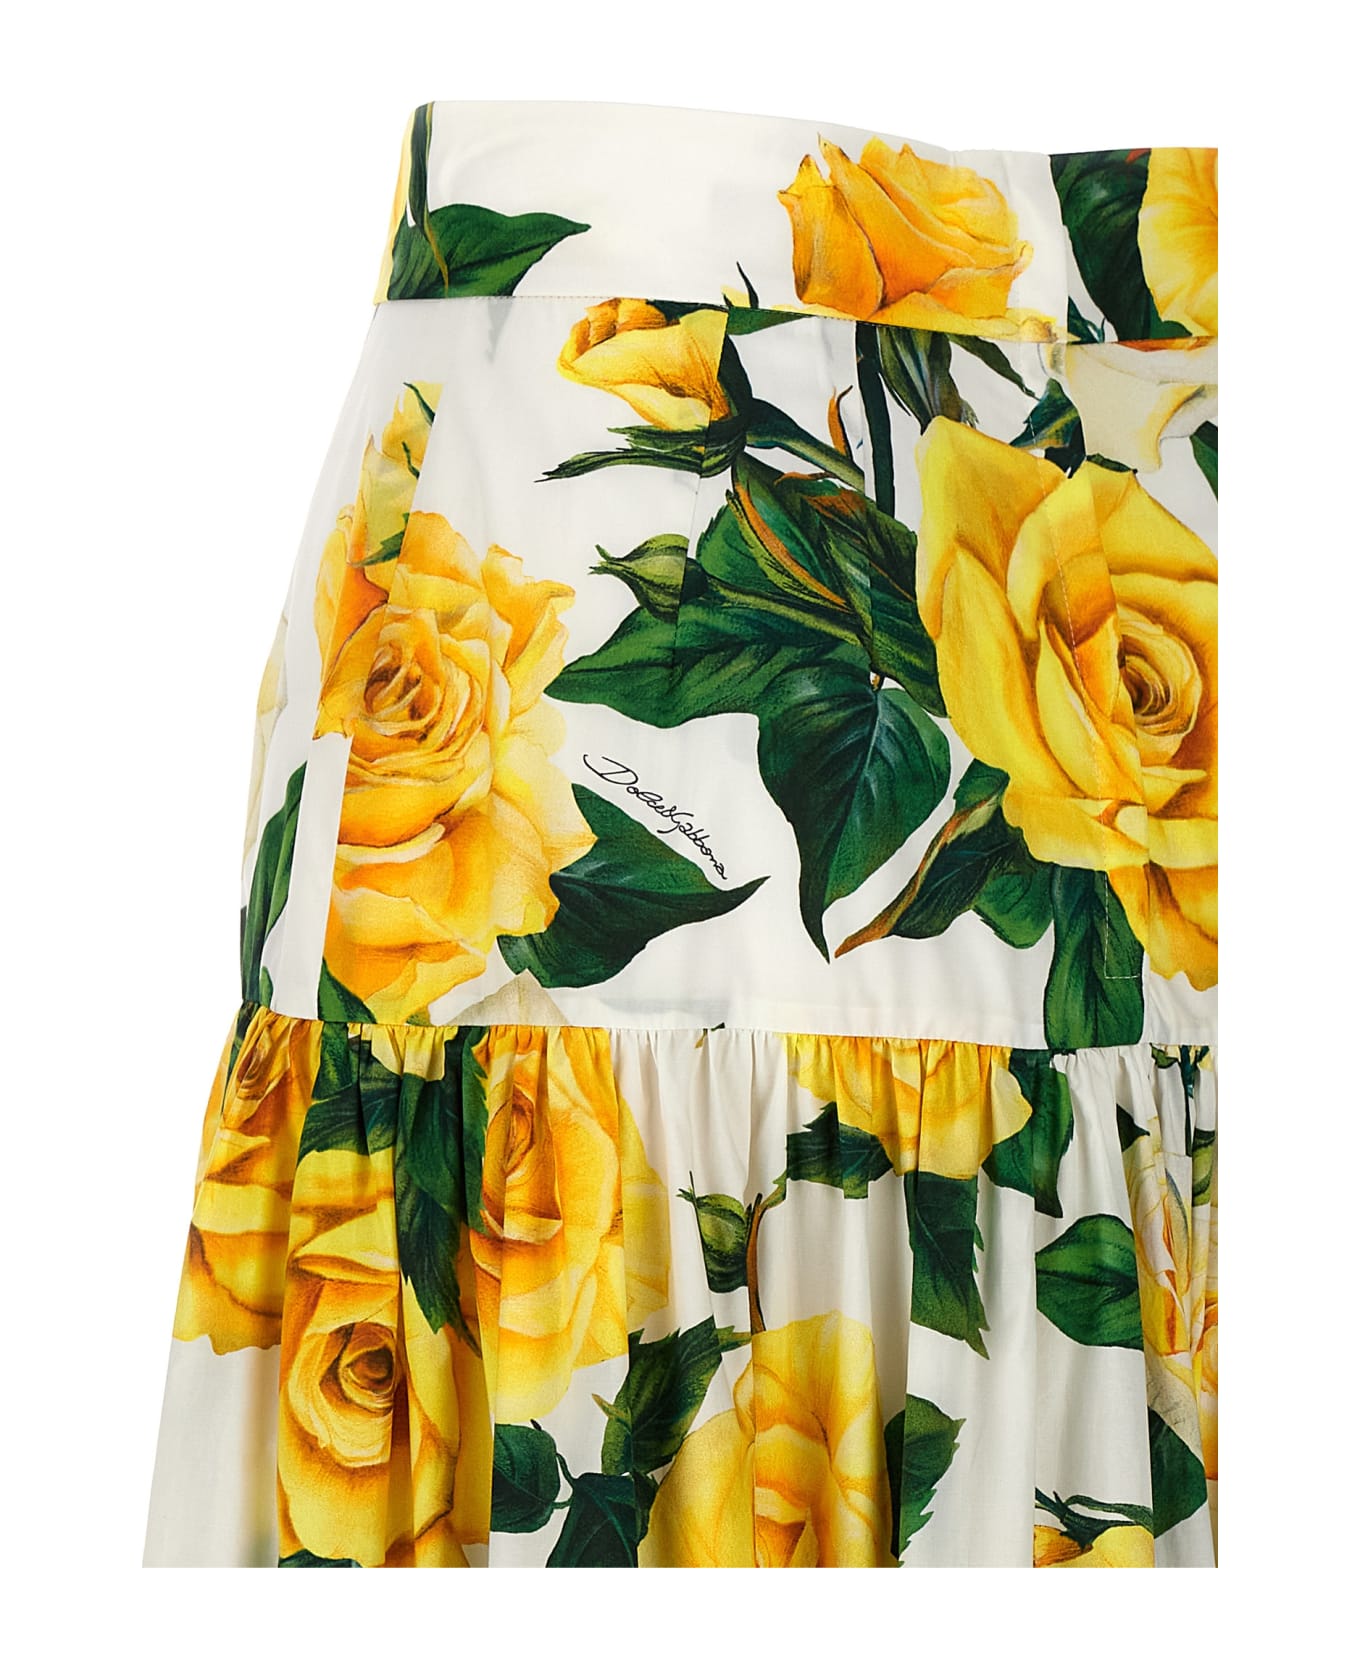 Dolce & Gabbana 'rose Gialle' Skirt - Multicolor